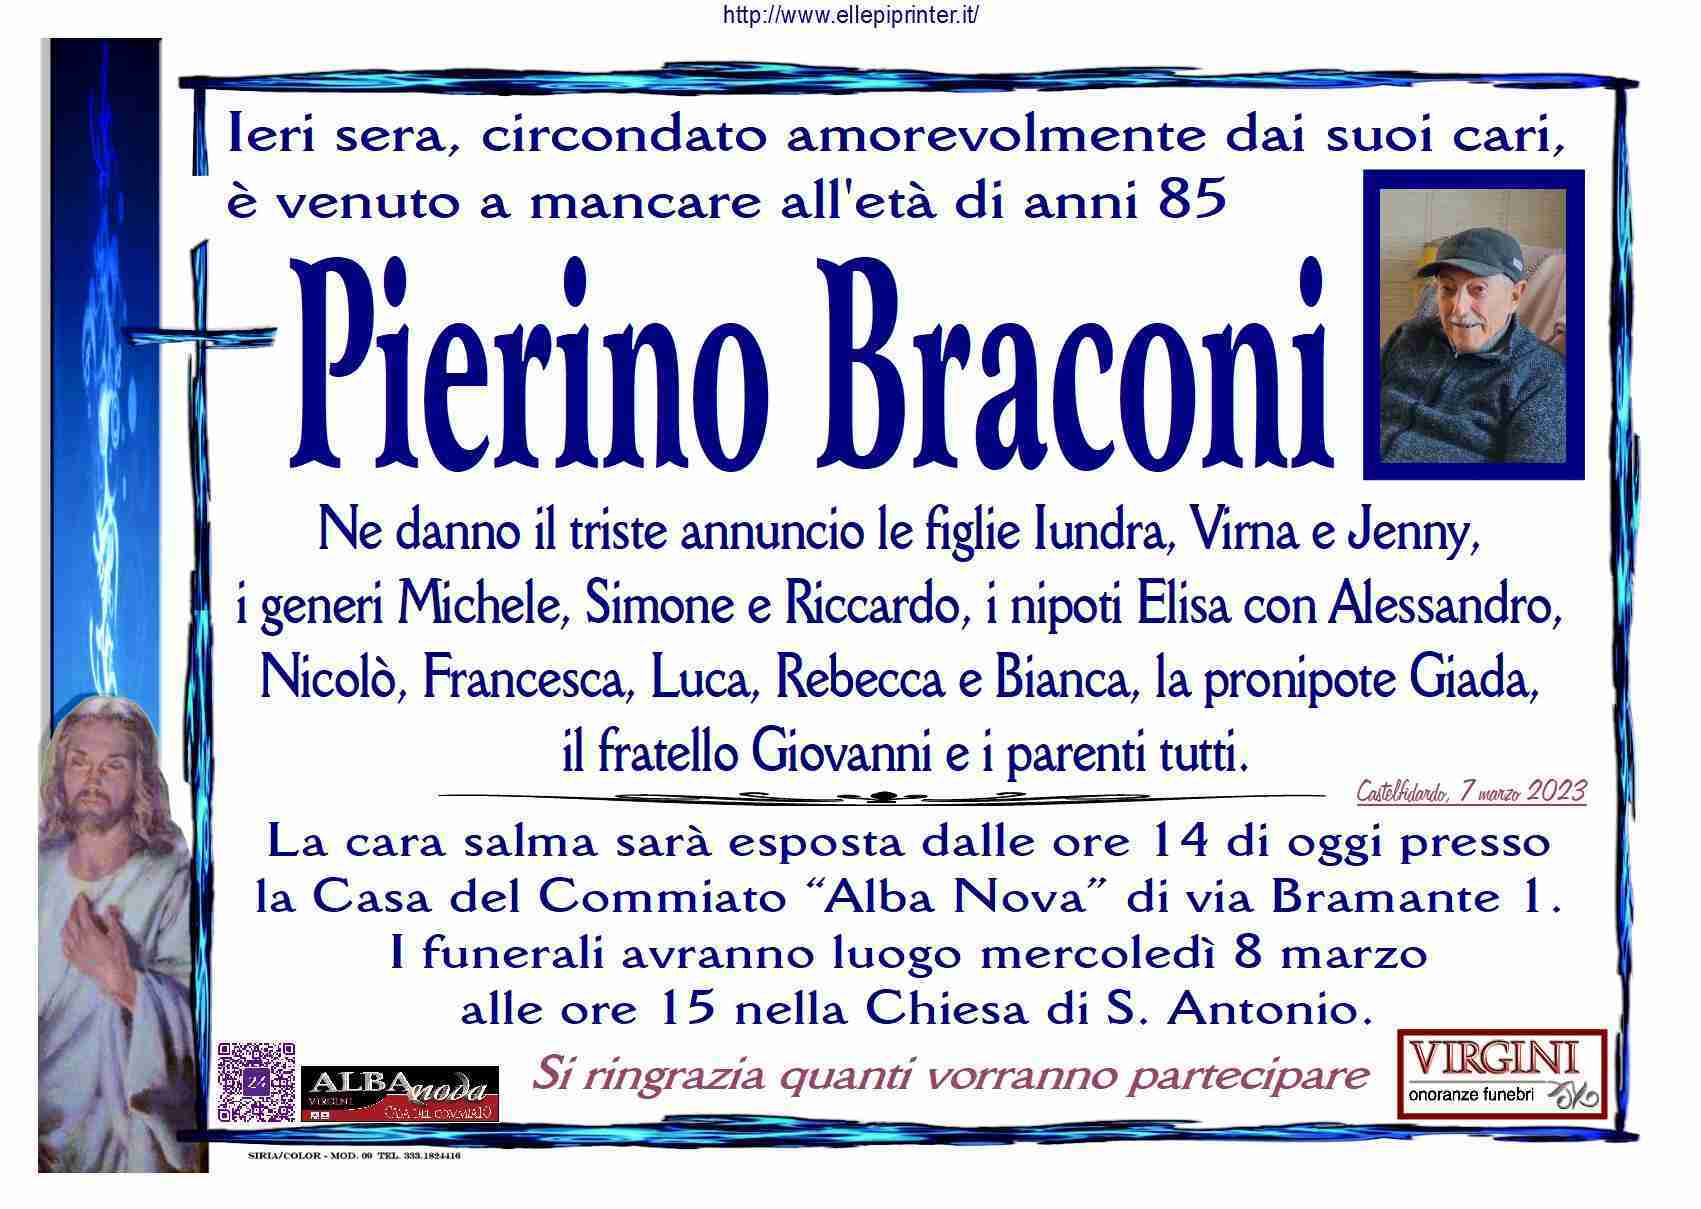 Pierino Braconi